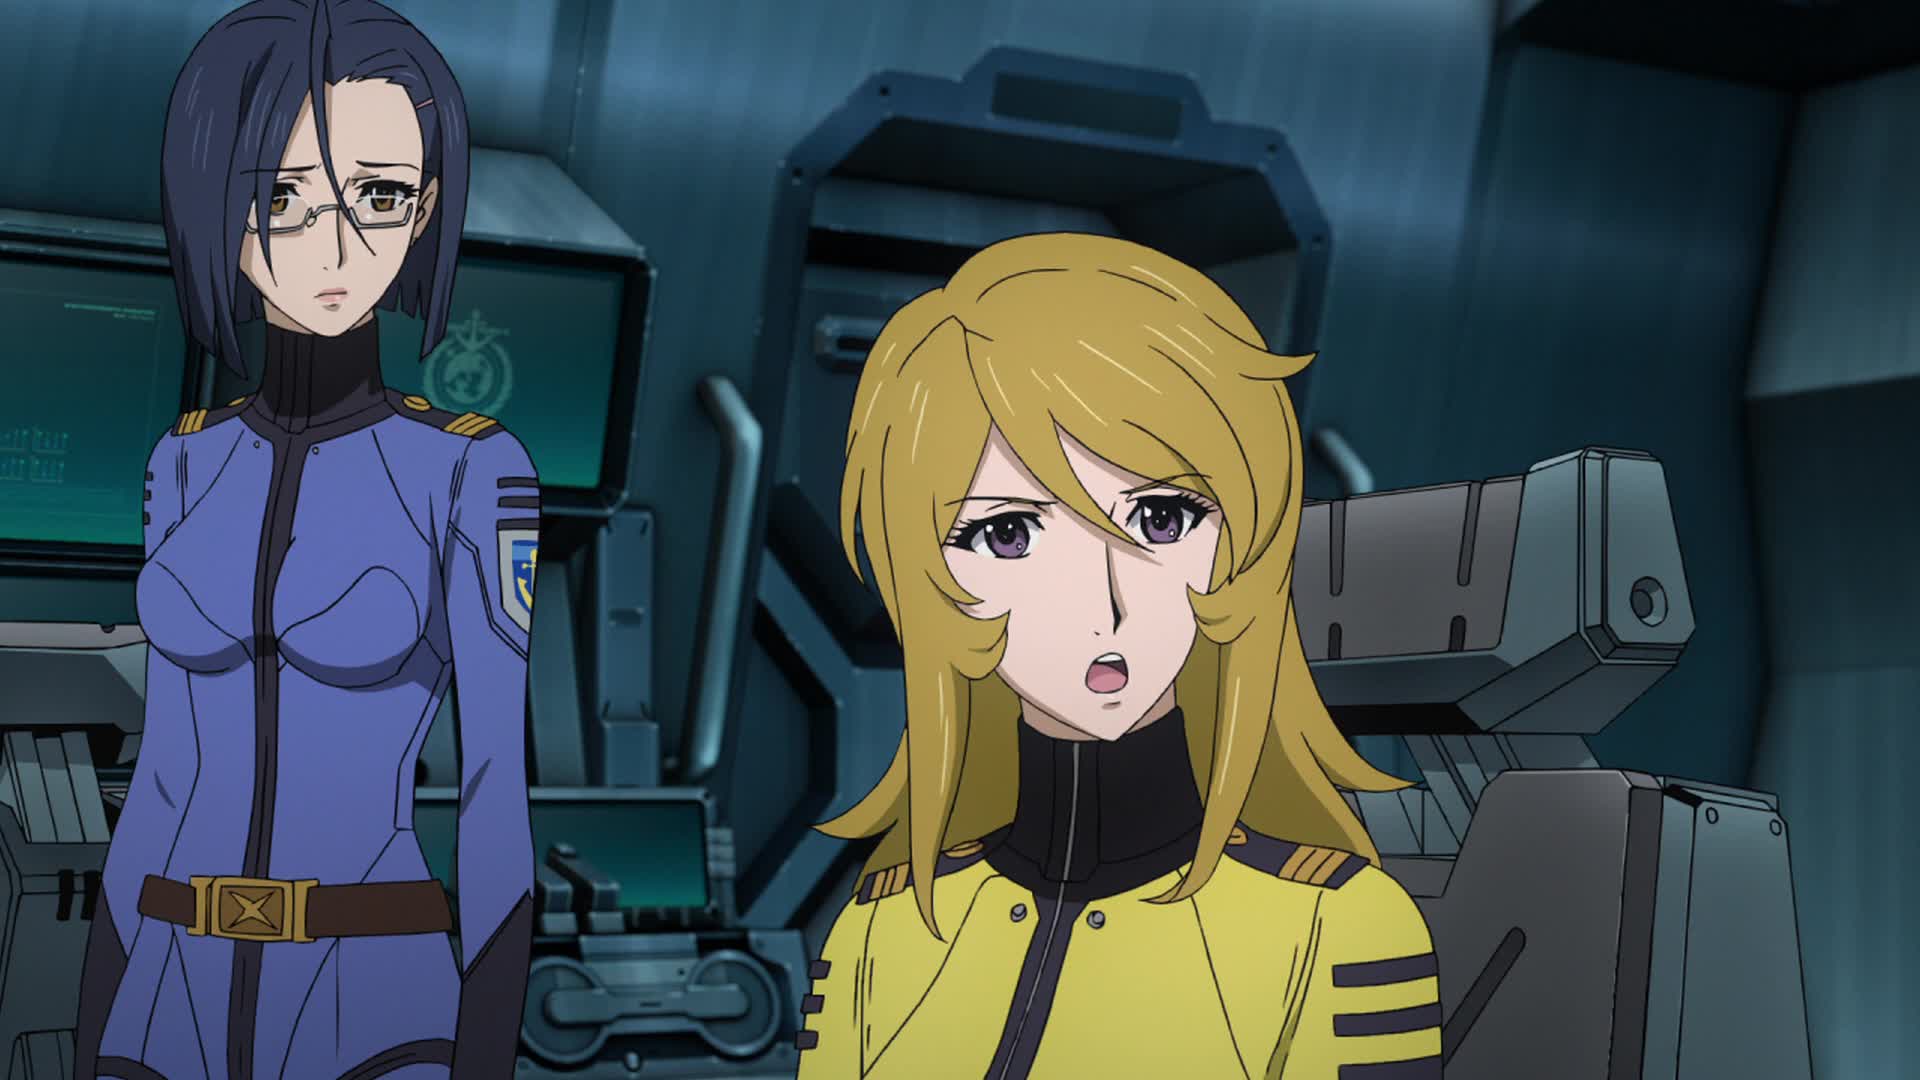 Space Battleship Yamato 2199 (Anime) - TV Tropes